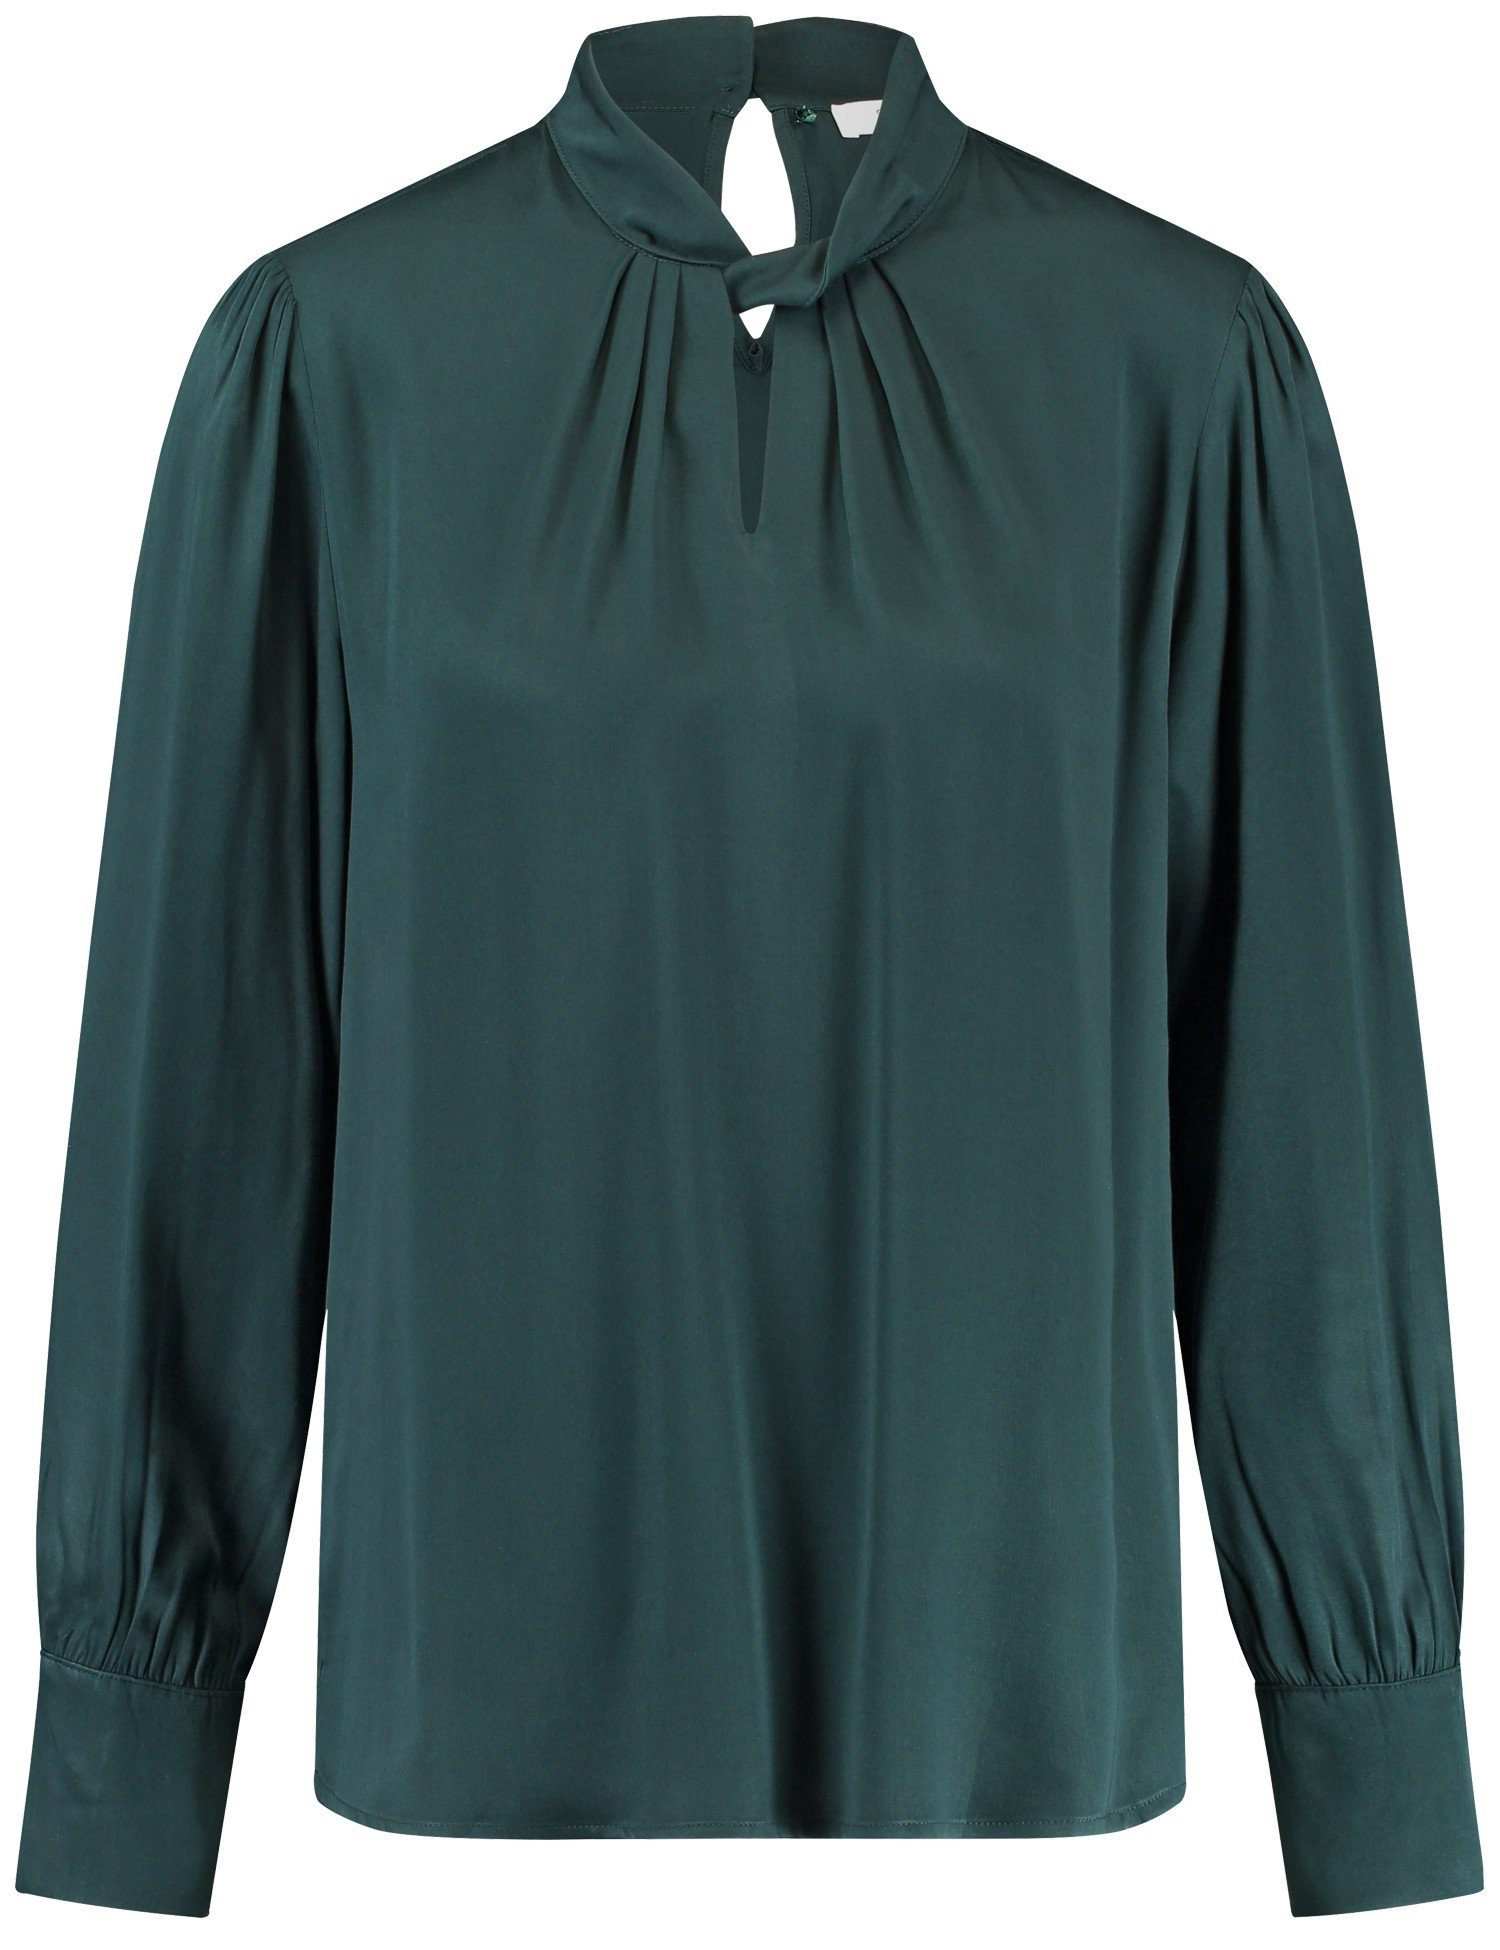 GERRY WEBER Langarmbluse Fließende Bluse Teal dekorativem Green Ausschnitt mit